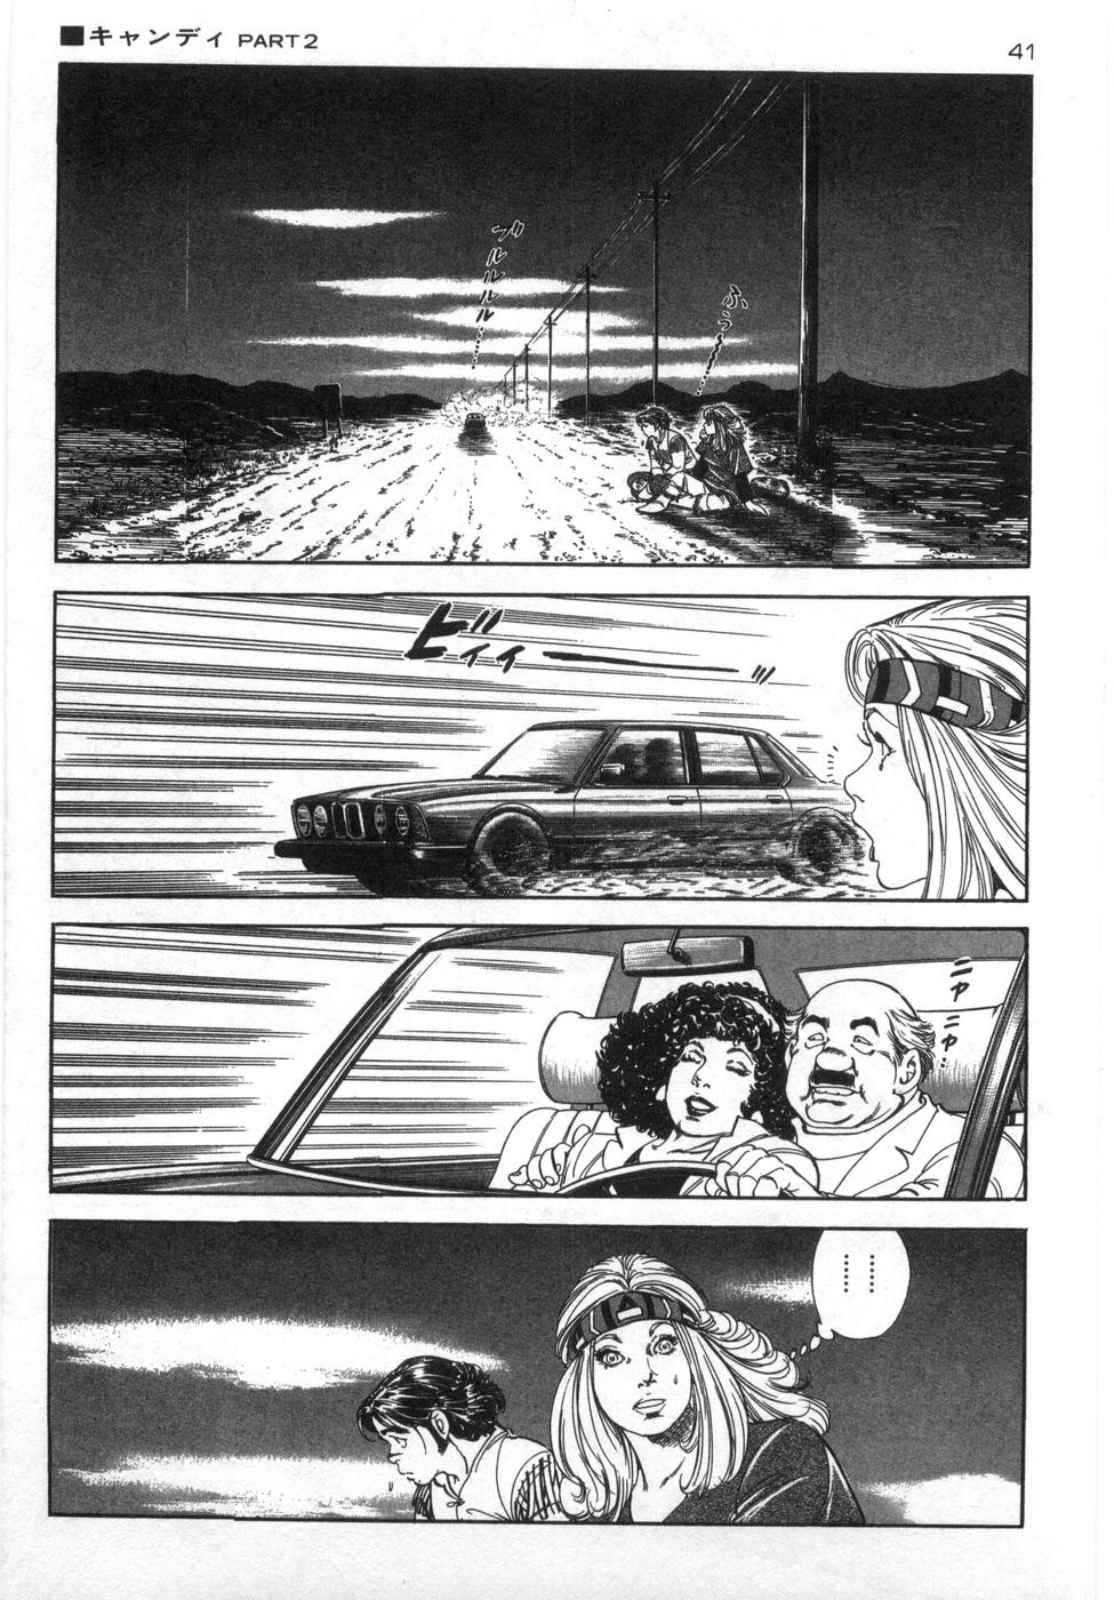 [Kano Seisaku, Koike Kazuo] Jikken Ningyou Dummy Oscar Vol.14 [叶精作, 小池一夫] 実験人形ダミー・オスカー 第14巻